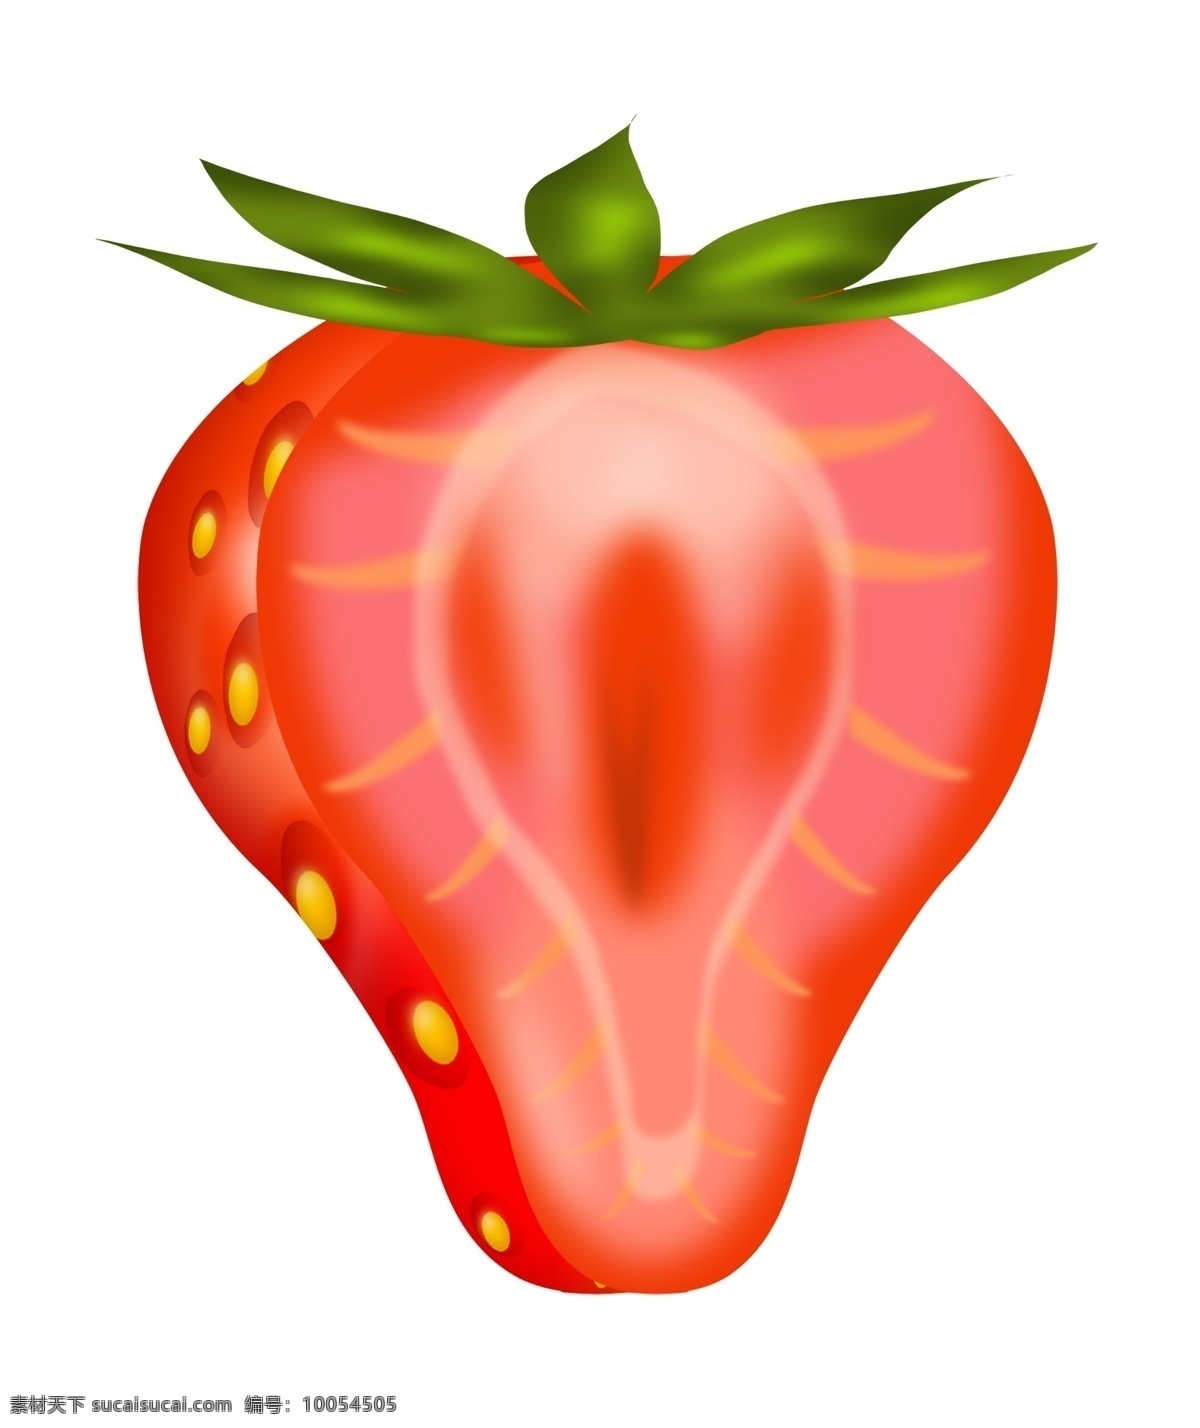 切开 草莓 手绘 插画 切开的草莓 红色草莓 新鲜草莓 美味的草莓 美食插画 水果插画 手绘水果 仿真草莓